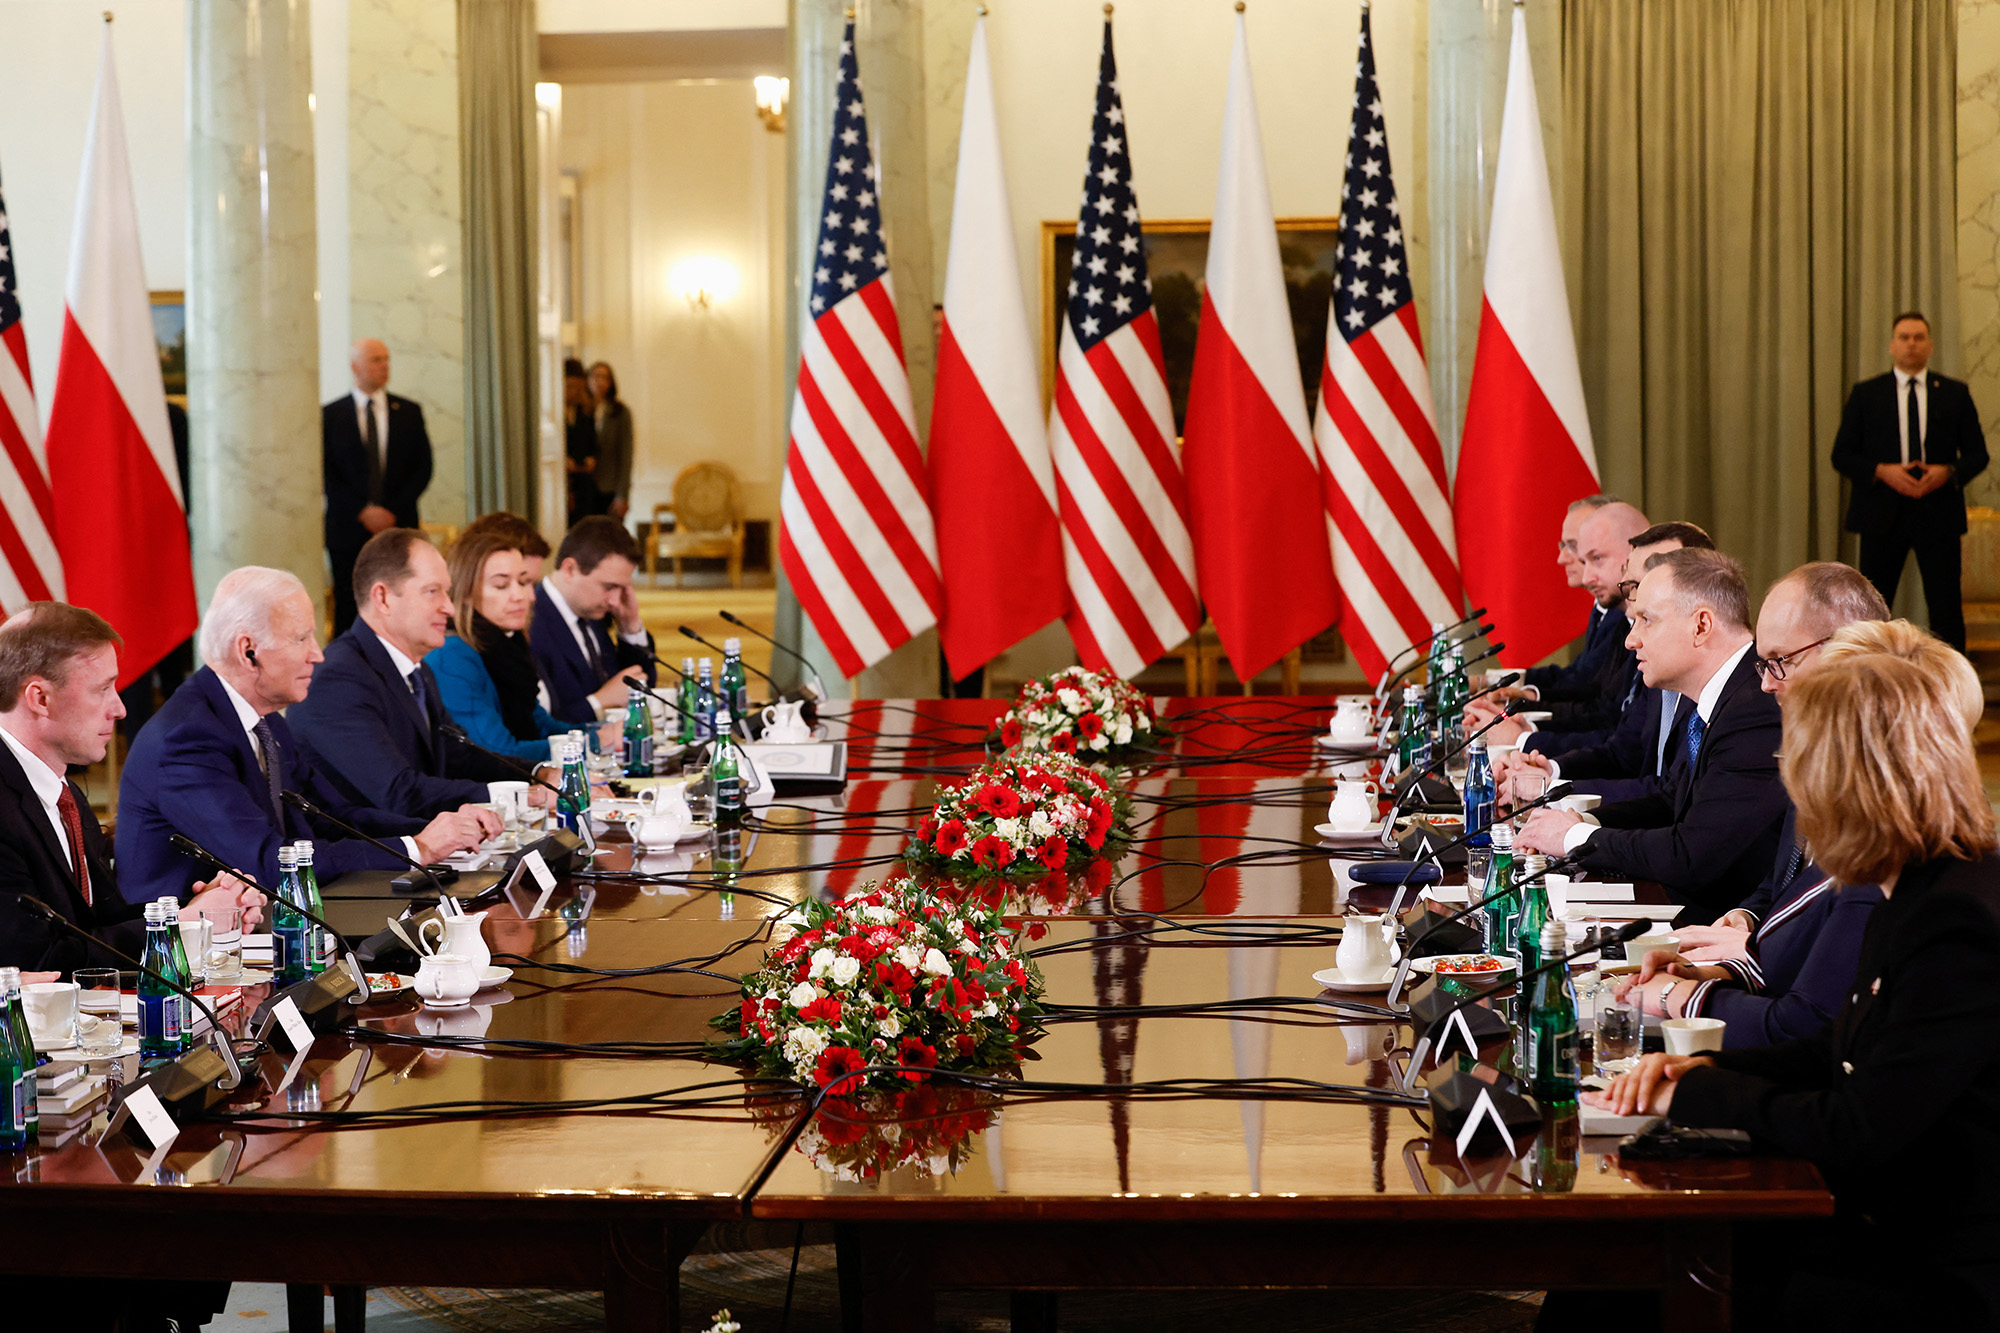 Biden thanks Poland for "unwavering" support in Ukraine